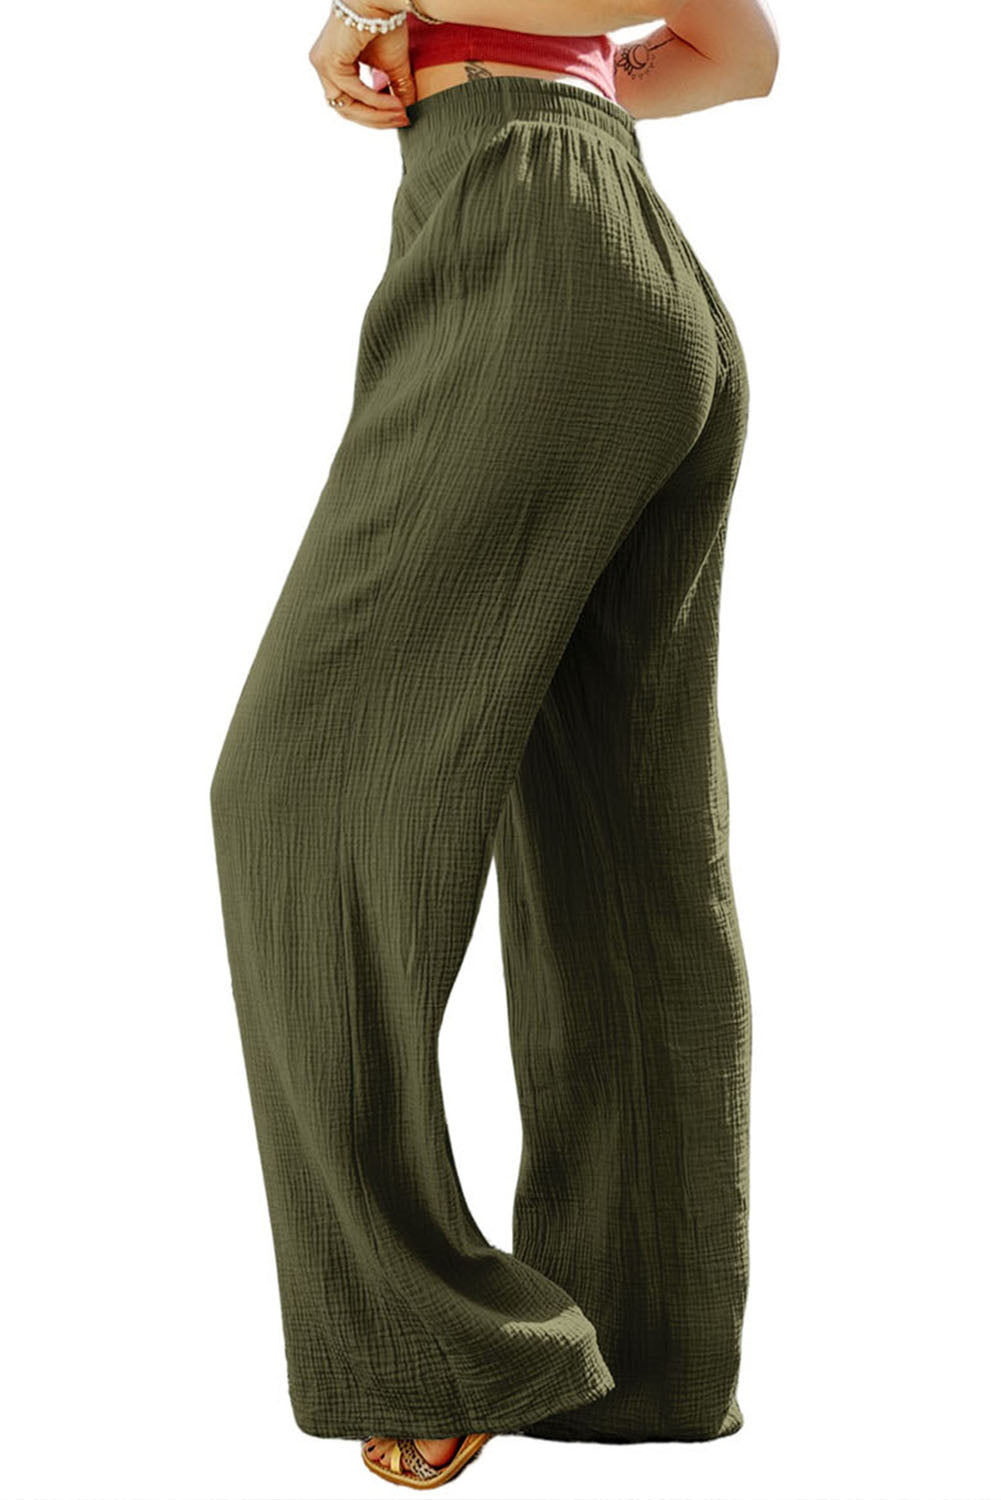 Zelene hlače širokih nogavica s naboranom teksturom